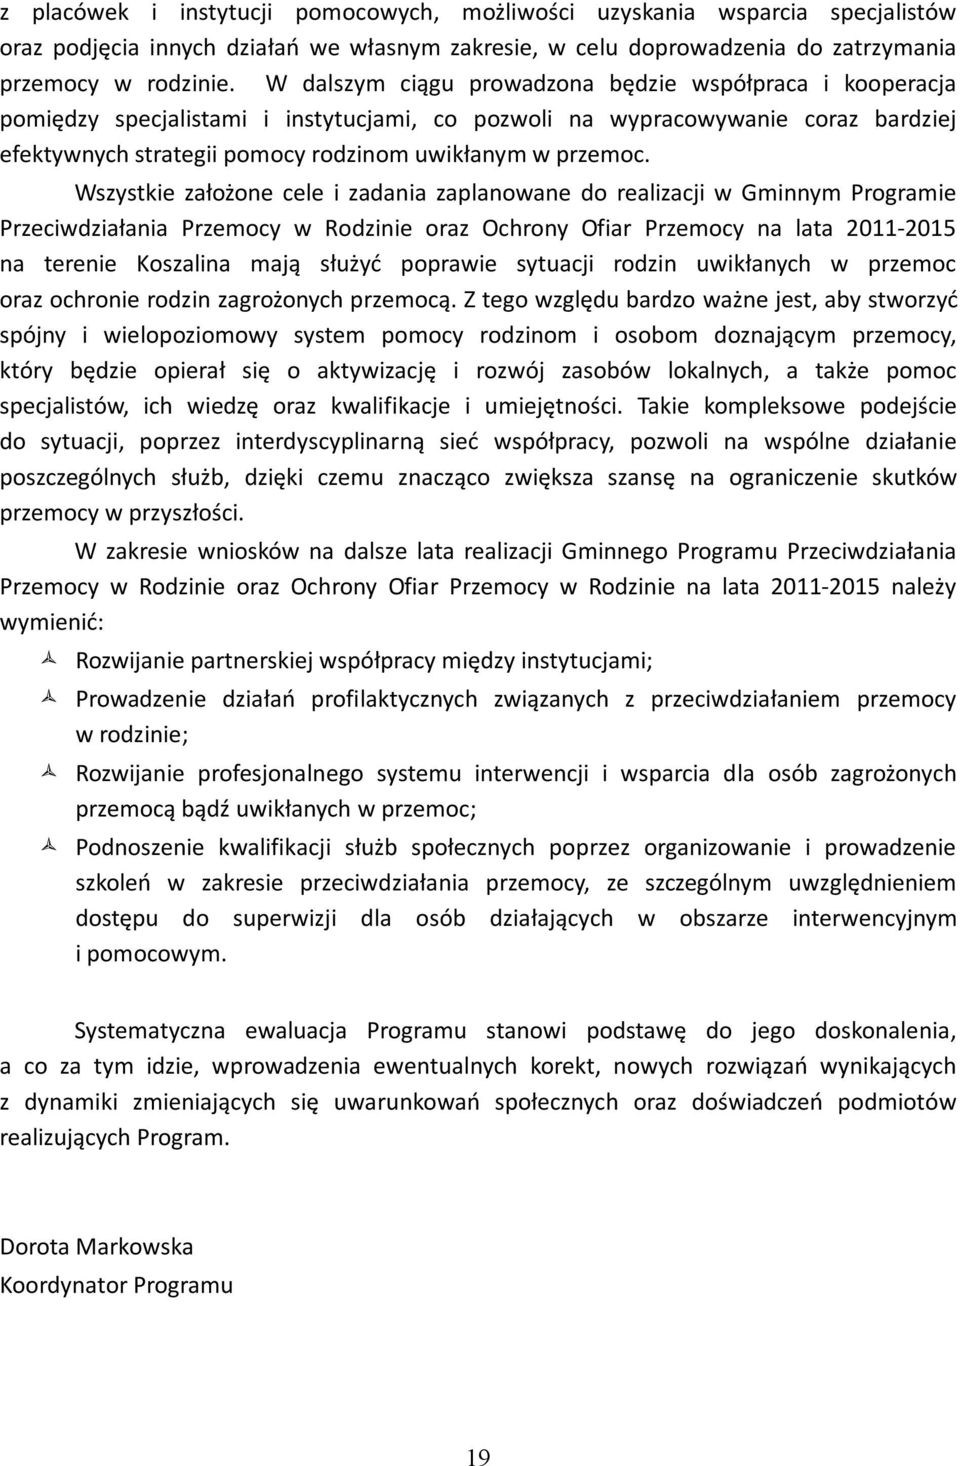 Wszystkie założone cele i zadania zaplanowane do realizacji w Gminnym Programie Przeciwdziałania Przemocy w Rodzinie oraz Ochrony Ofiar Przemocy na lata 2011-2015 na terenie Koszalina mają służyć